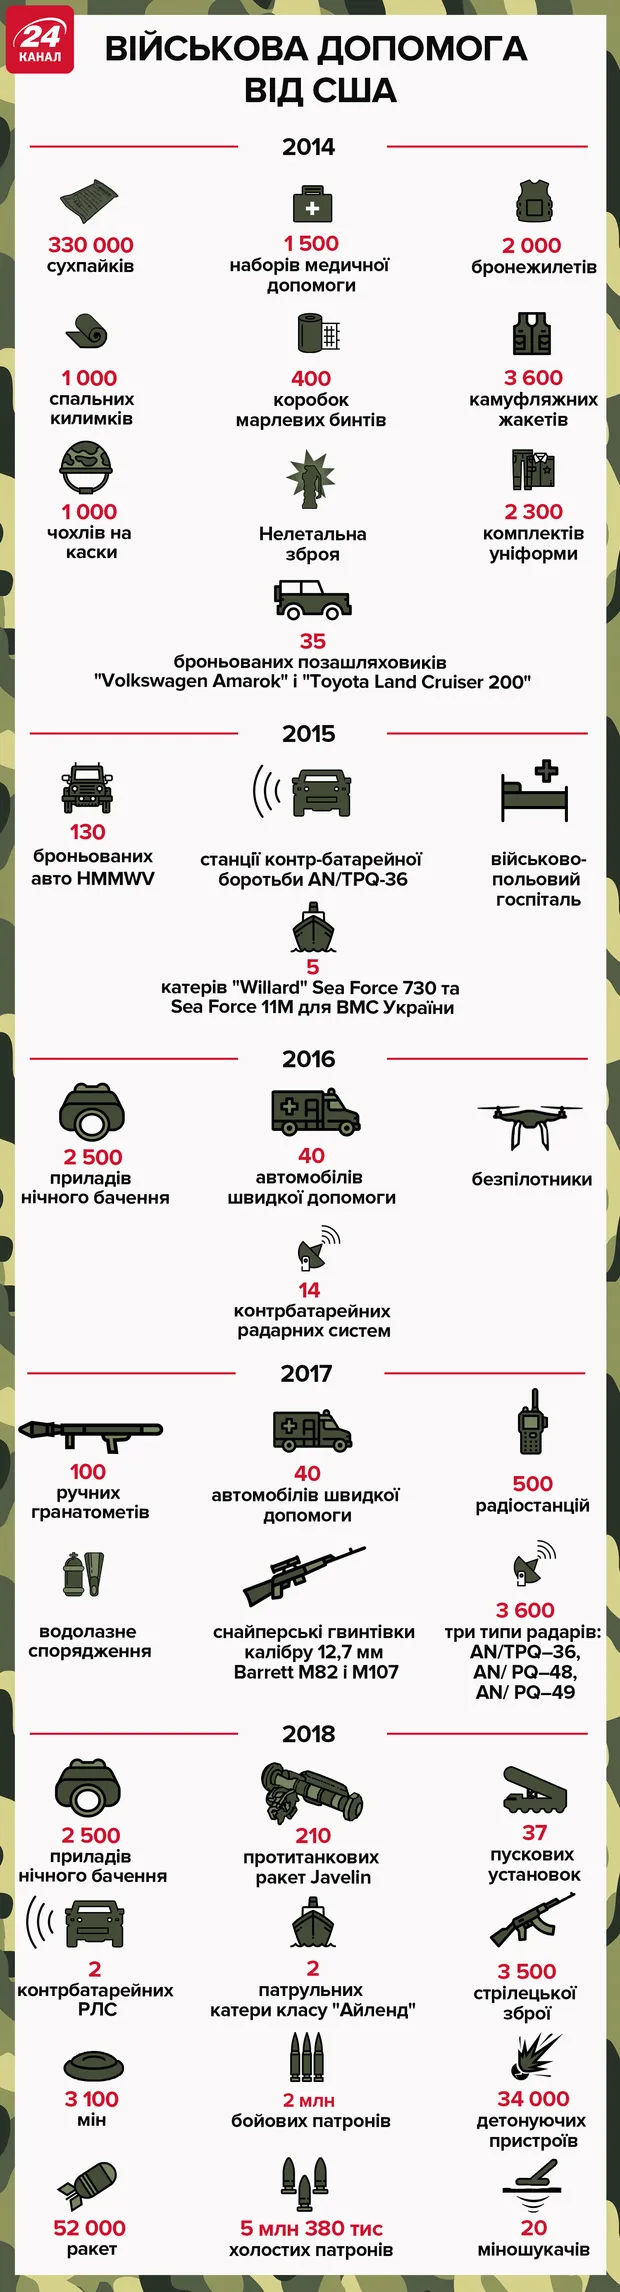 Як США допомагали Україні раніше